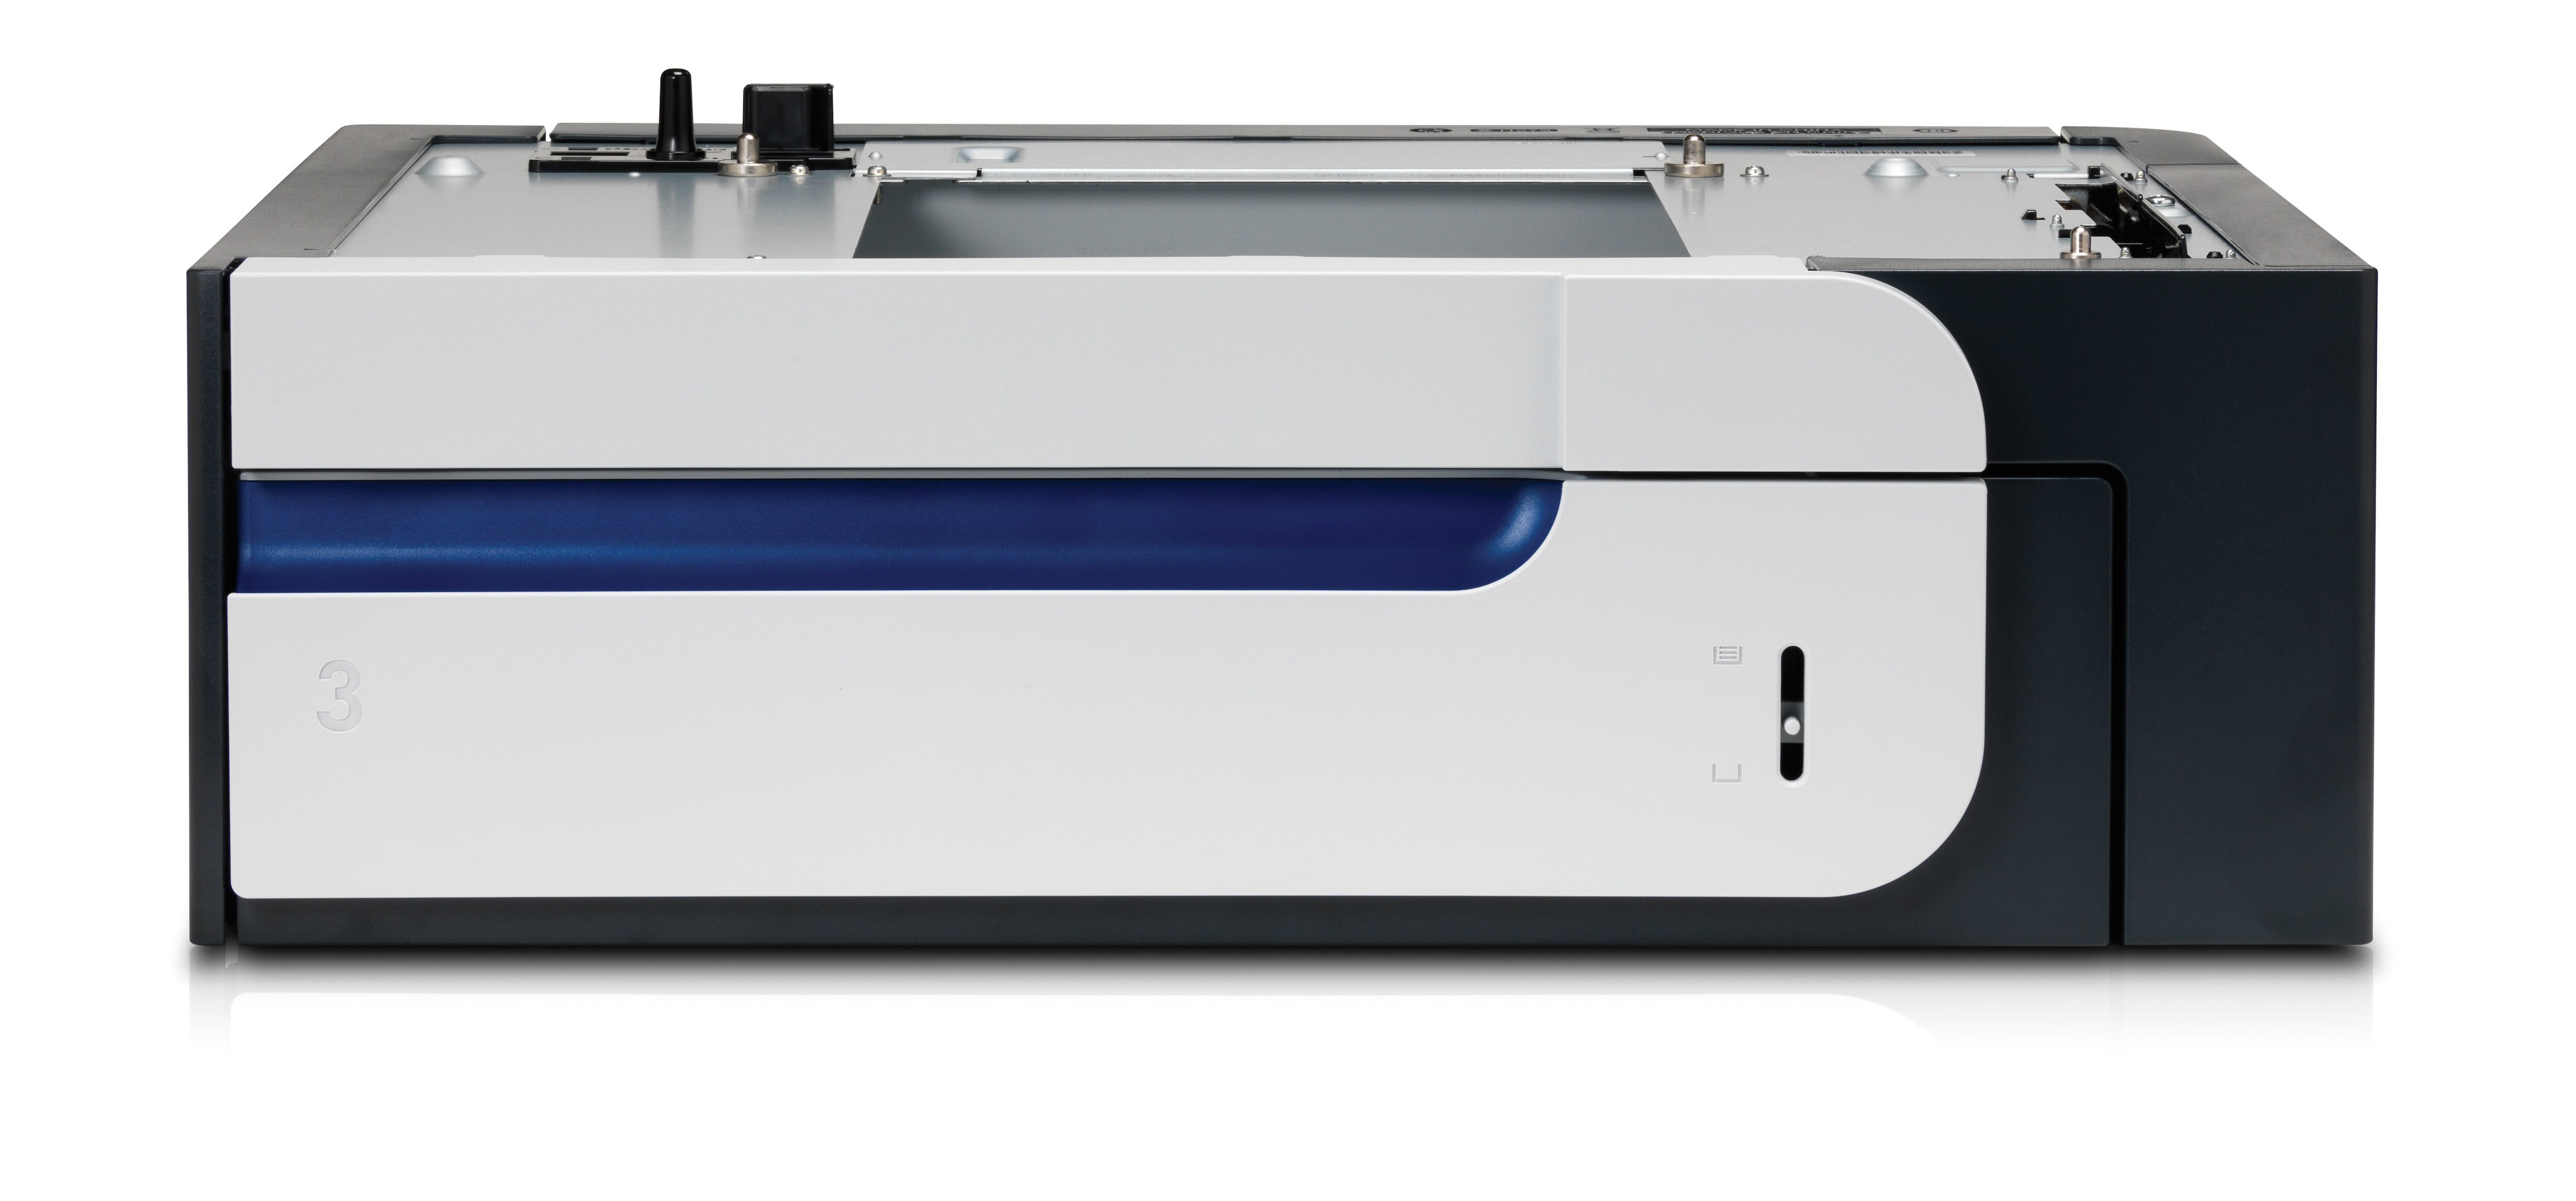 HP LaserJet Color LaserJet invoerlade voor 500 vel papier en zware media